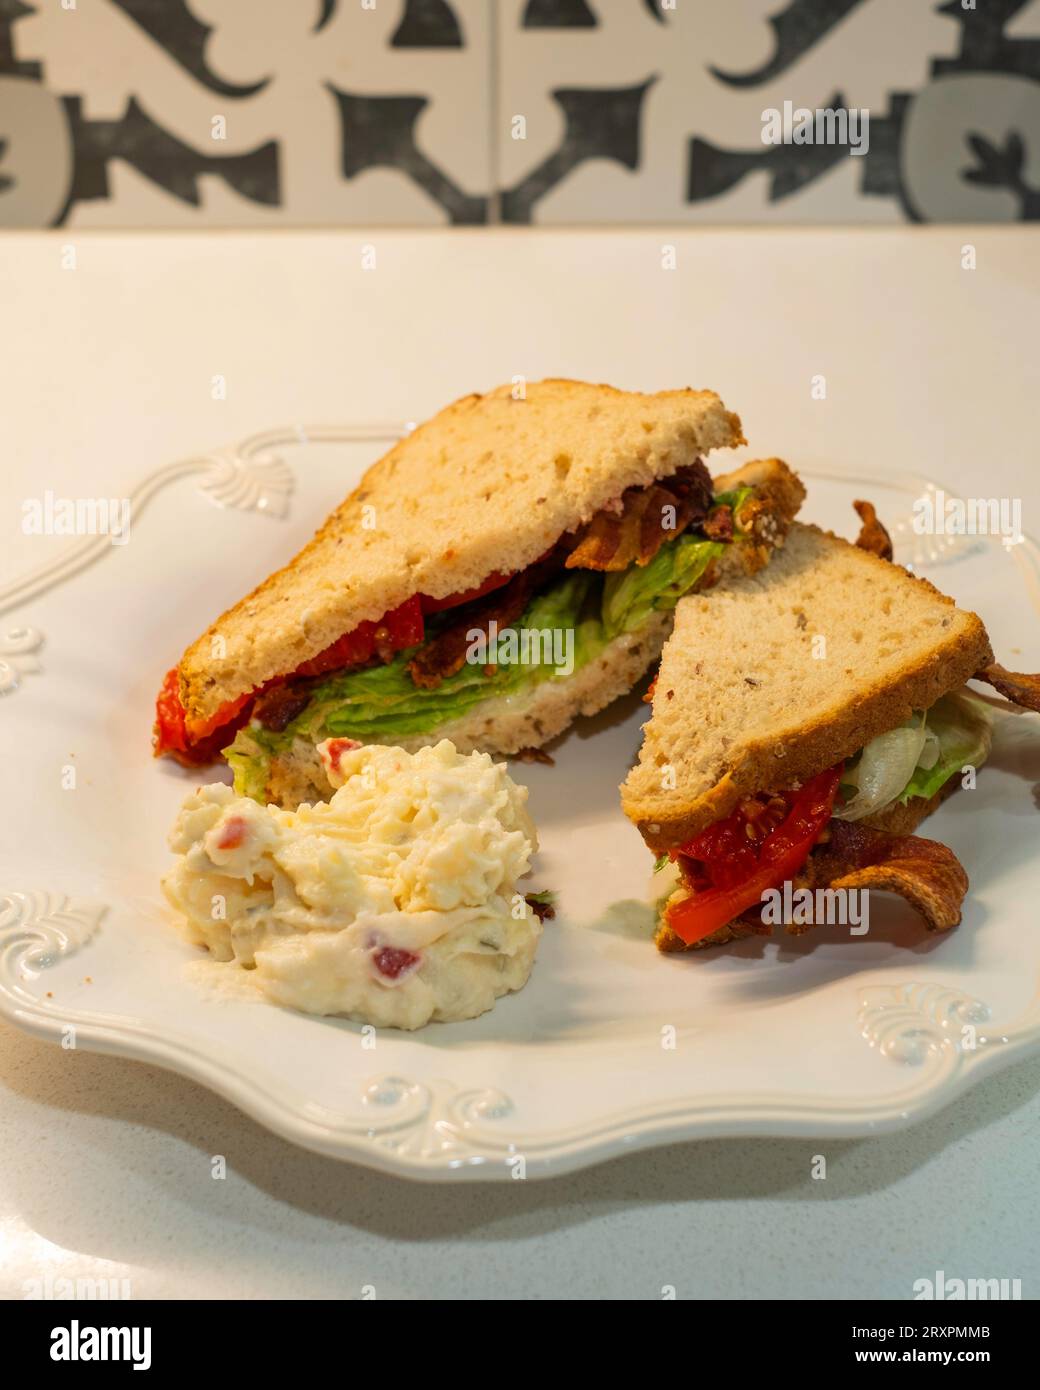 BLT, un sandwich bacon, tomate et laitue à base de pain d'avoine, avec une portion de salade de pommes de terre sur une assiette blanche. ÉTATS-UNIS. Banque D'Images